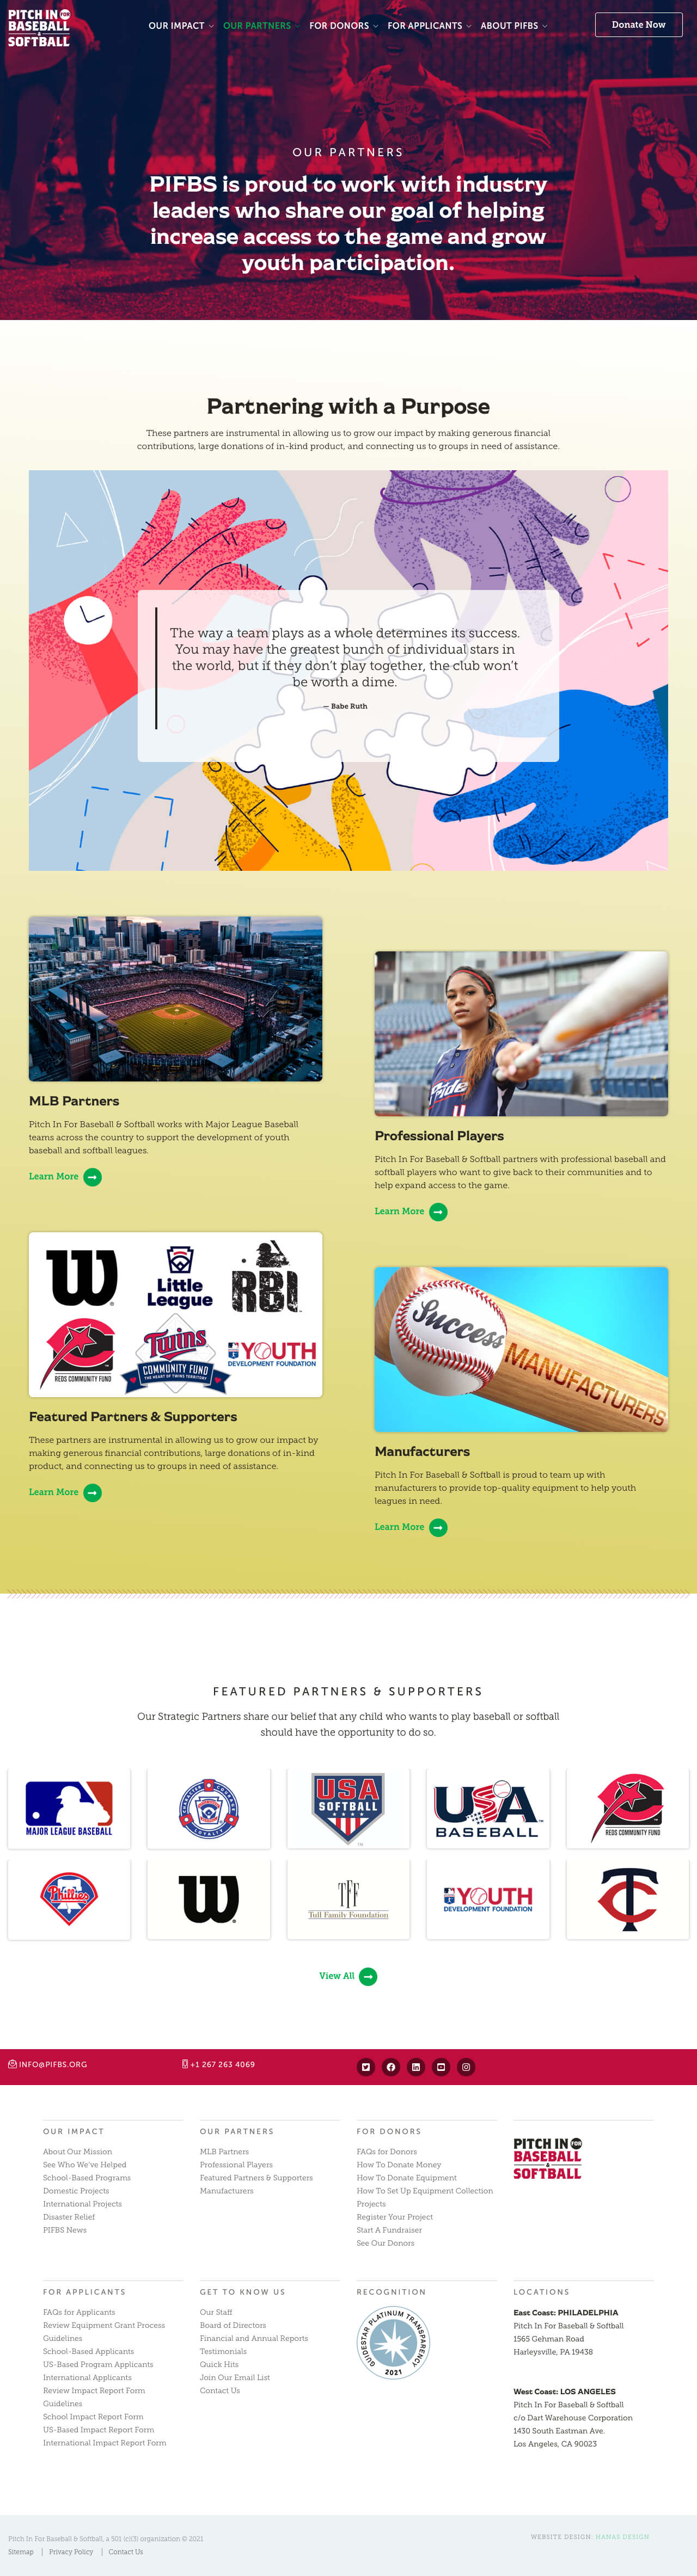 Vega Digital Awards Winner - Website Redesign for Pitch In For Baseball & Softball